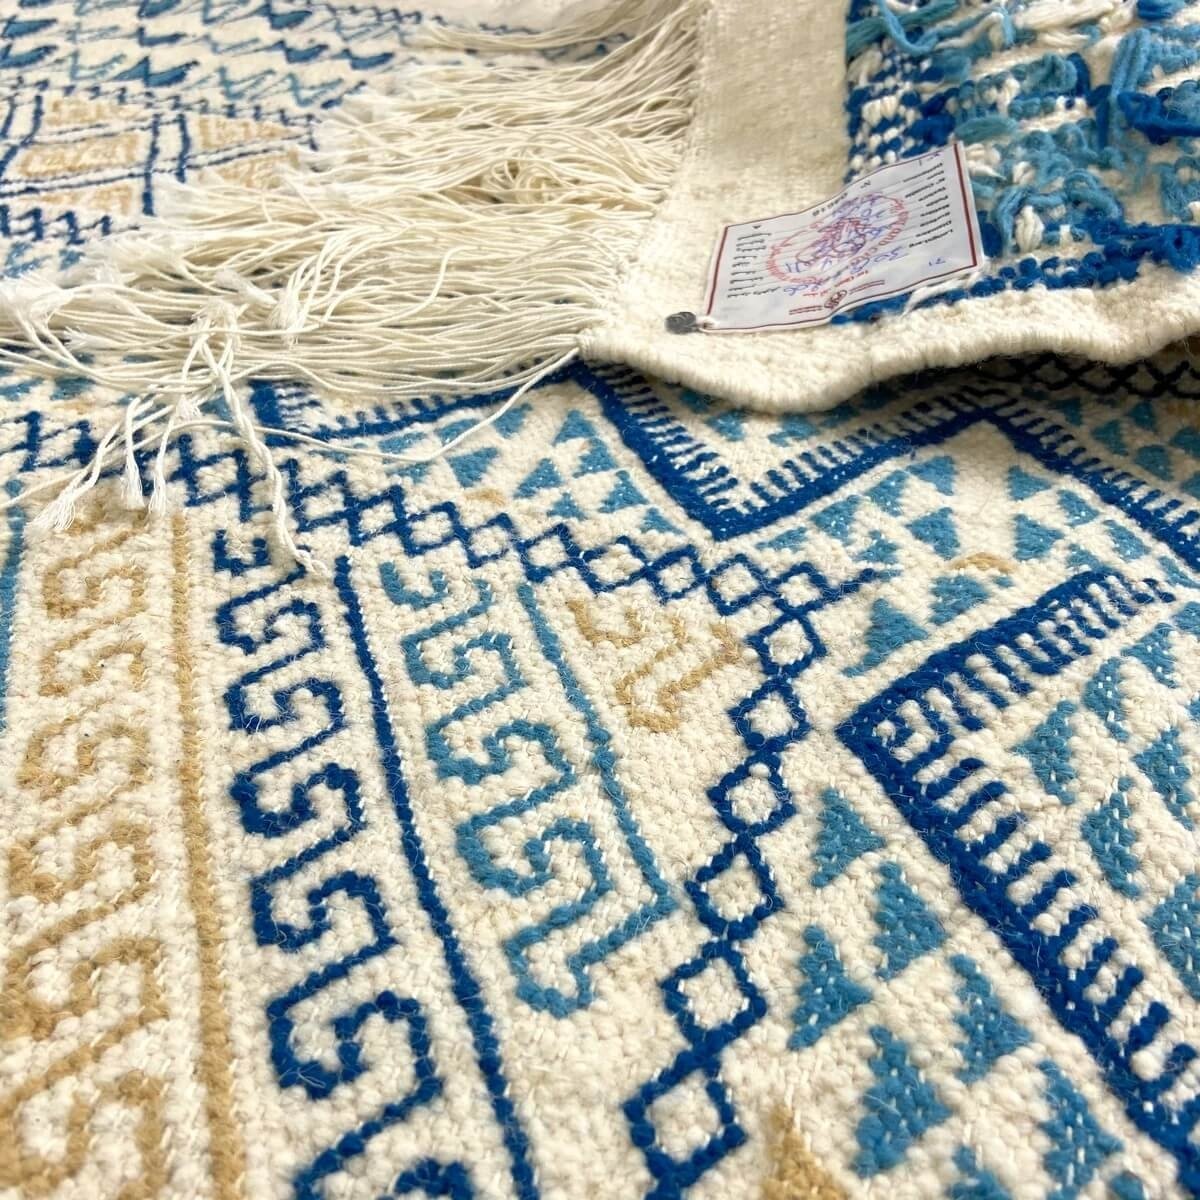 Berber tapijt Groot Tapijt Margoum Flouki 206x308 cm Blauw (Handgeweven, Wol, Tunesië) Tunesisch Margoum Tapijt uit de stad Kair